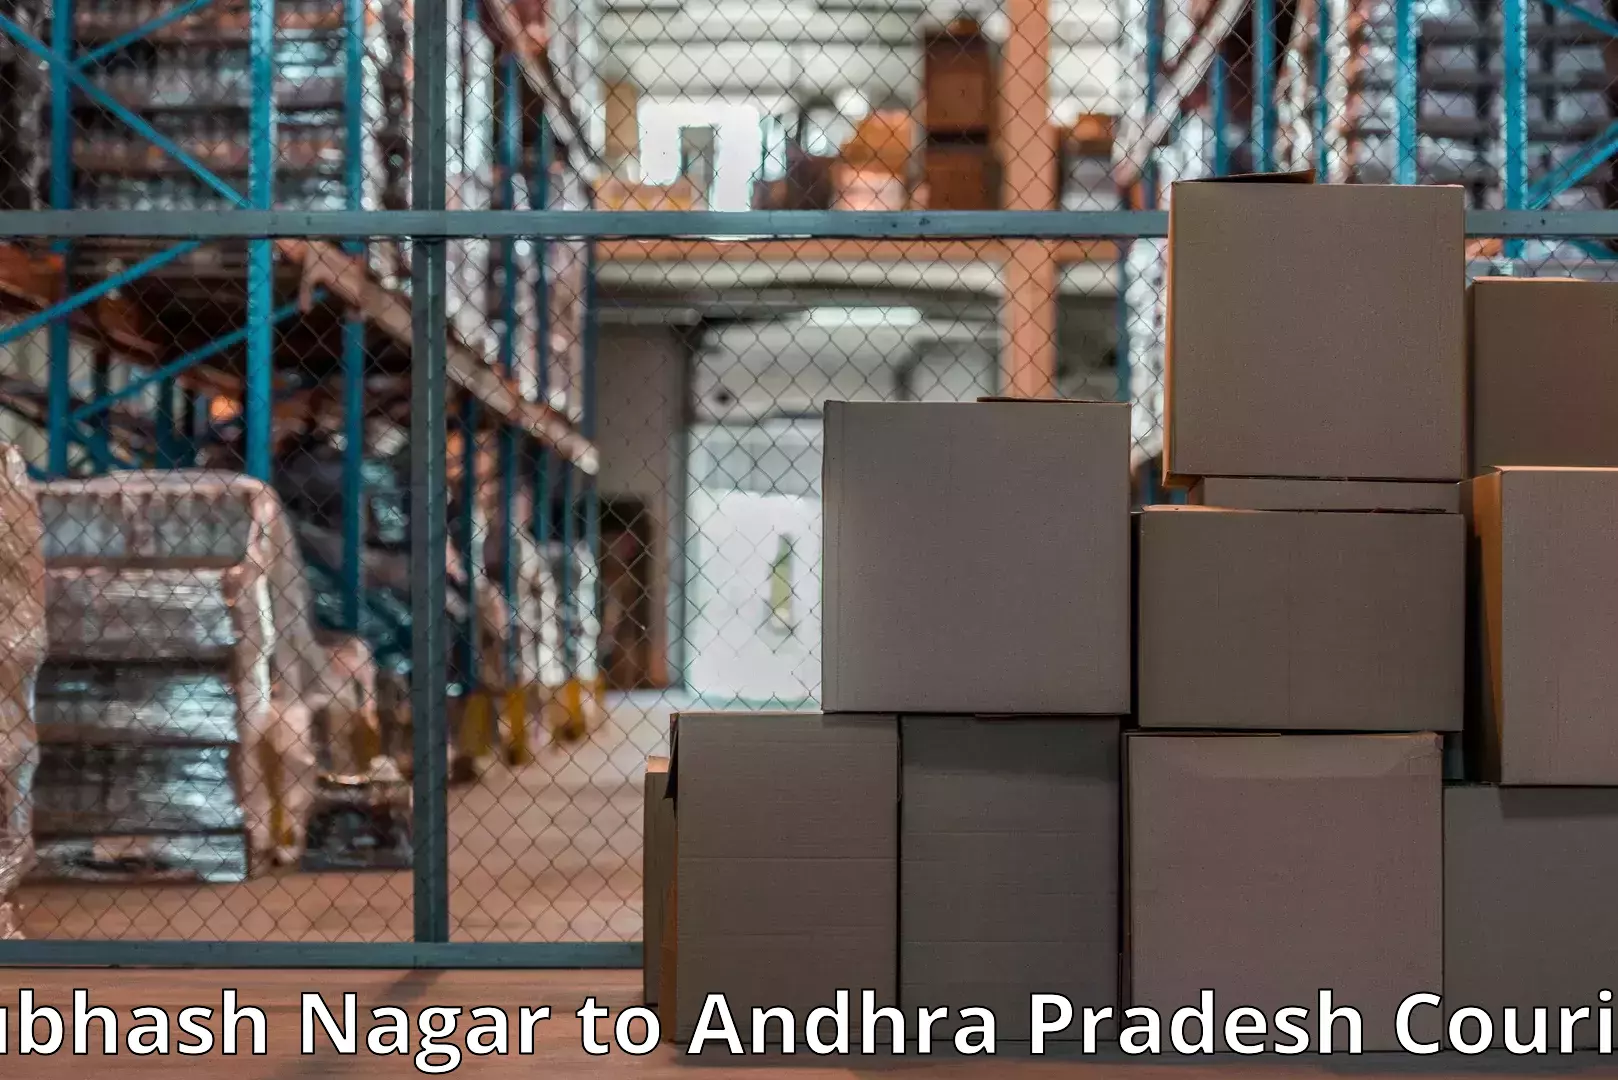 Furniture moving services Subhash Nagar to Andhra Pradesh